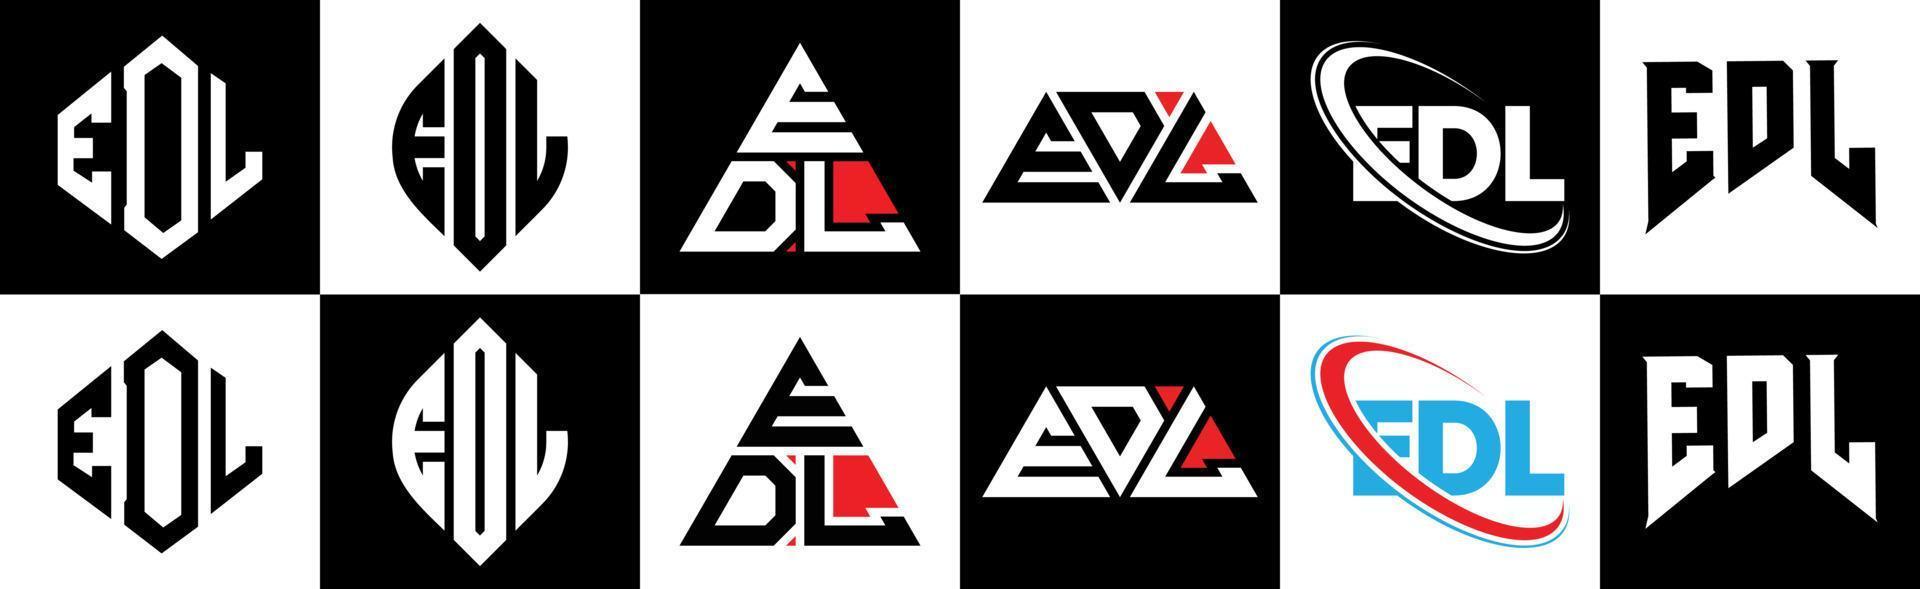 edl-Buchstaben-Logo-Design in sechs Stilen. Edl-Polygon, Kreis, Dreieck, Sechseck, flacher und einfacher Stil mit schwarz-weißem Buchstabenlogo in einer Zeichenfläche. Edl minimalistisches und klassisches Logo vektor